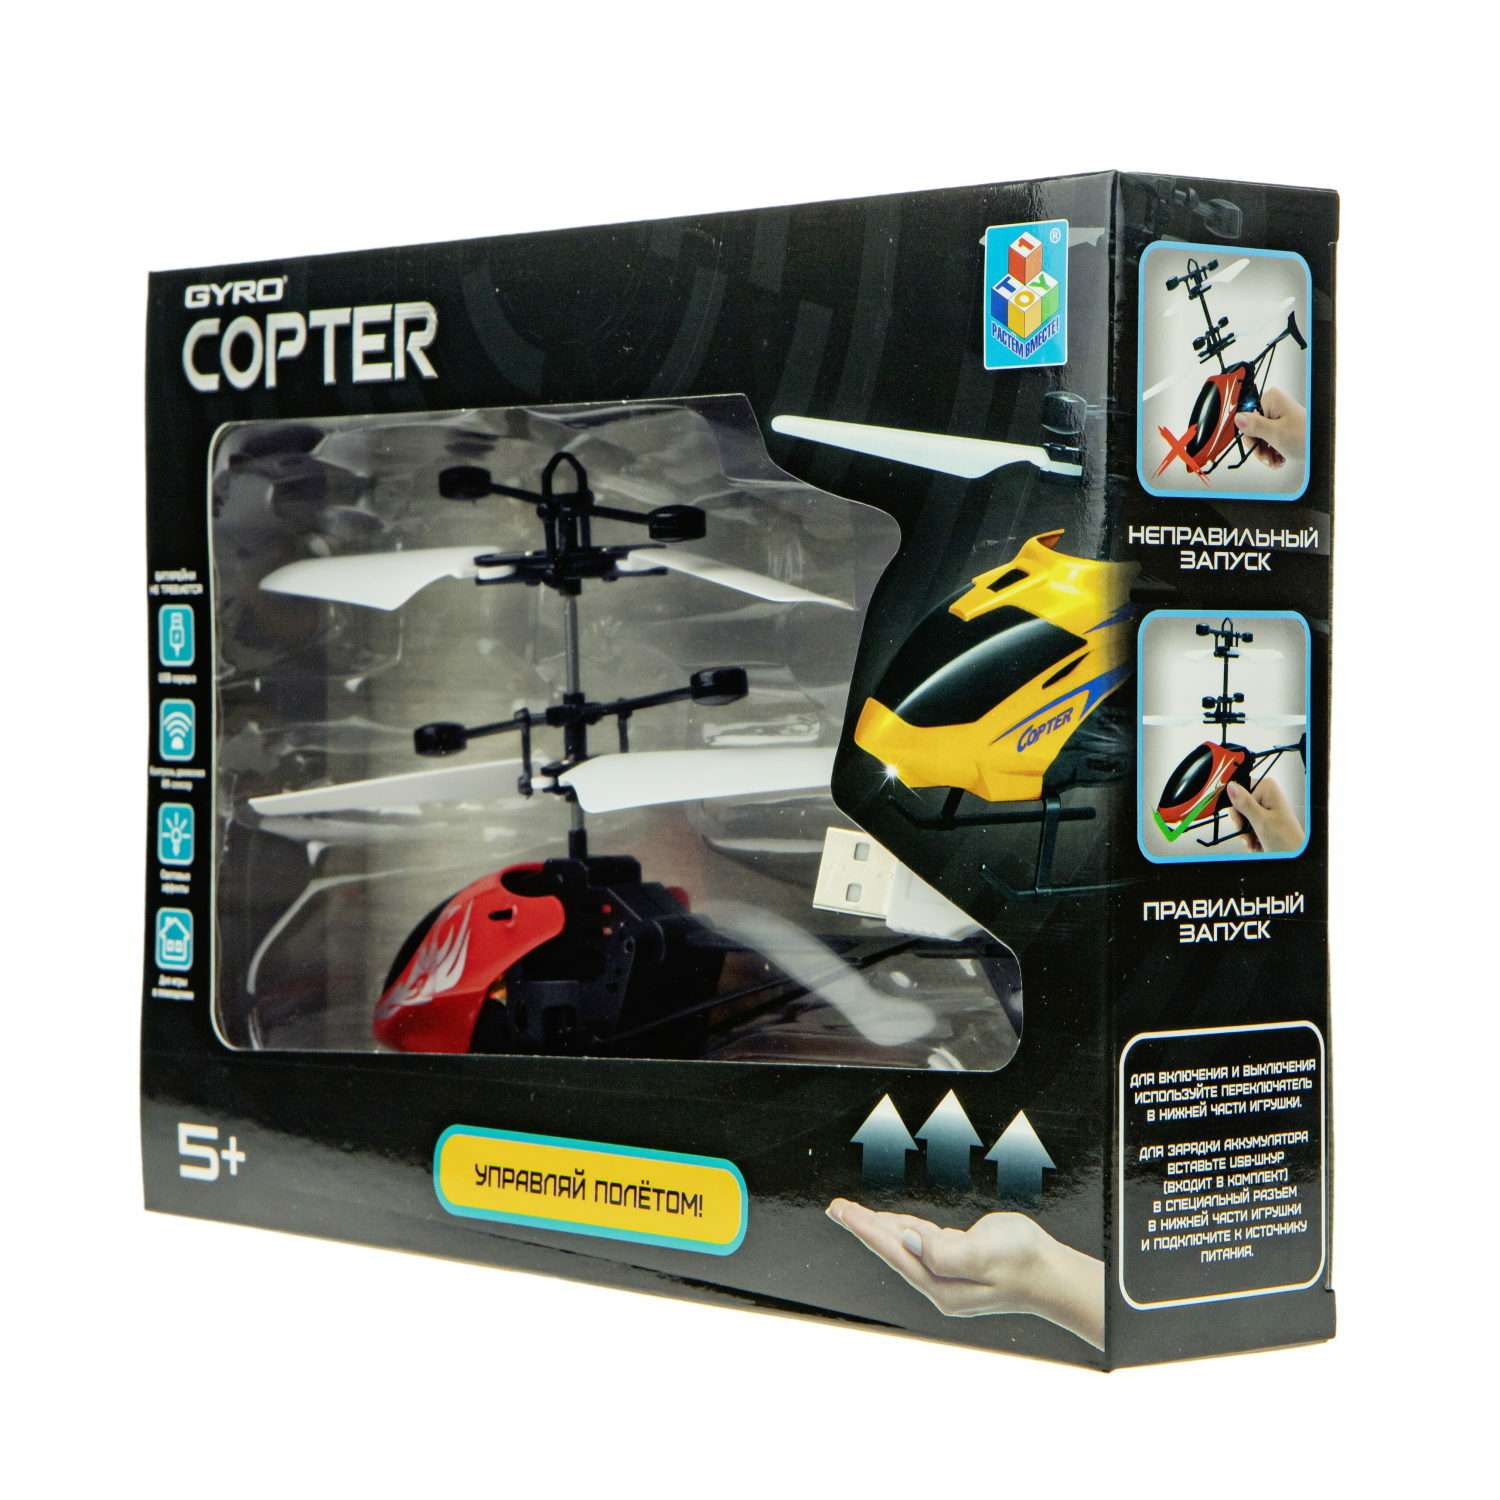 Интерактивная игрушка 1TOY Gyro-Copter вертолёт на сенсорном управлении со световыми эффектами Т15183 - фото 6